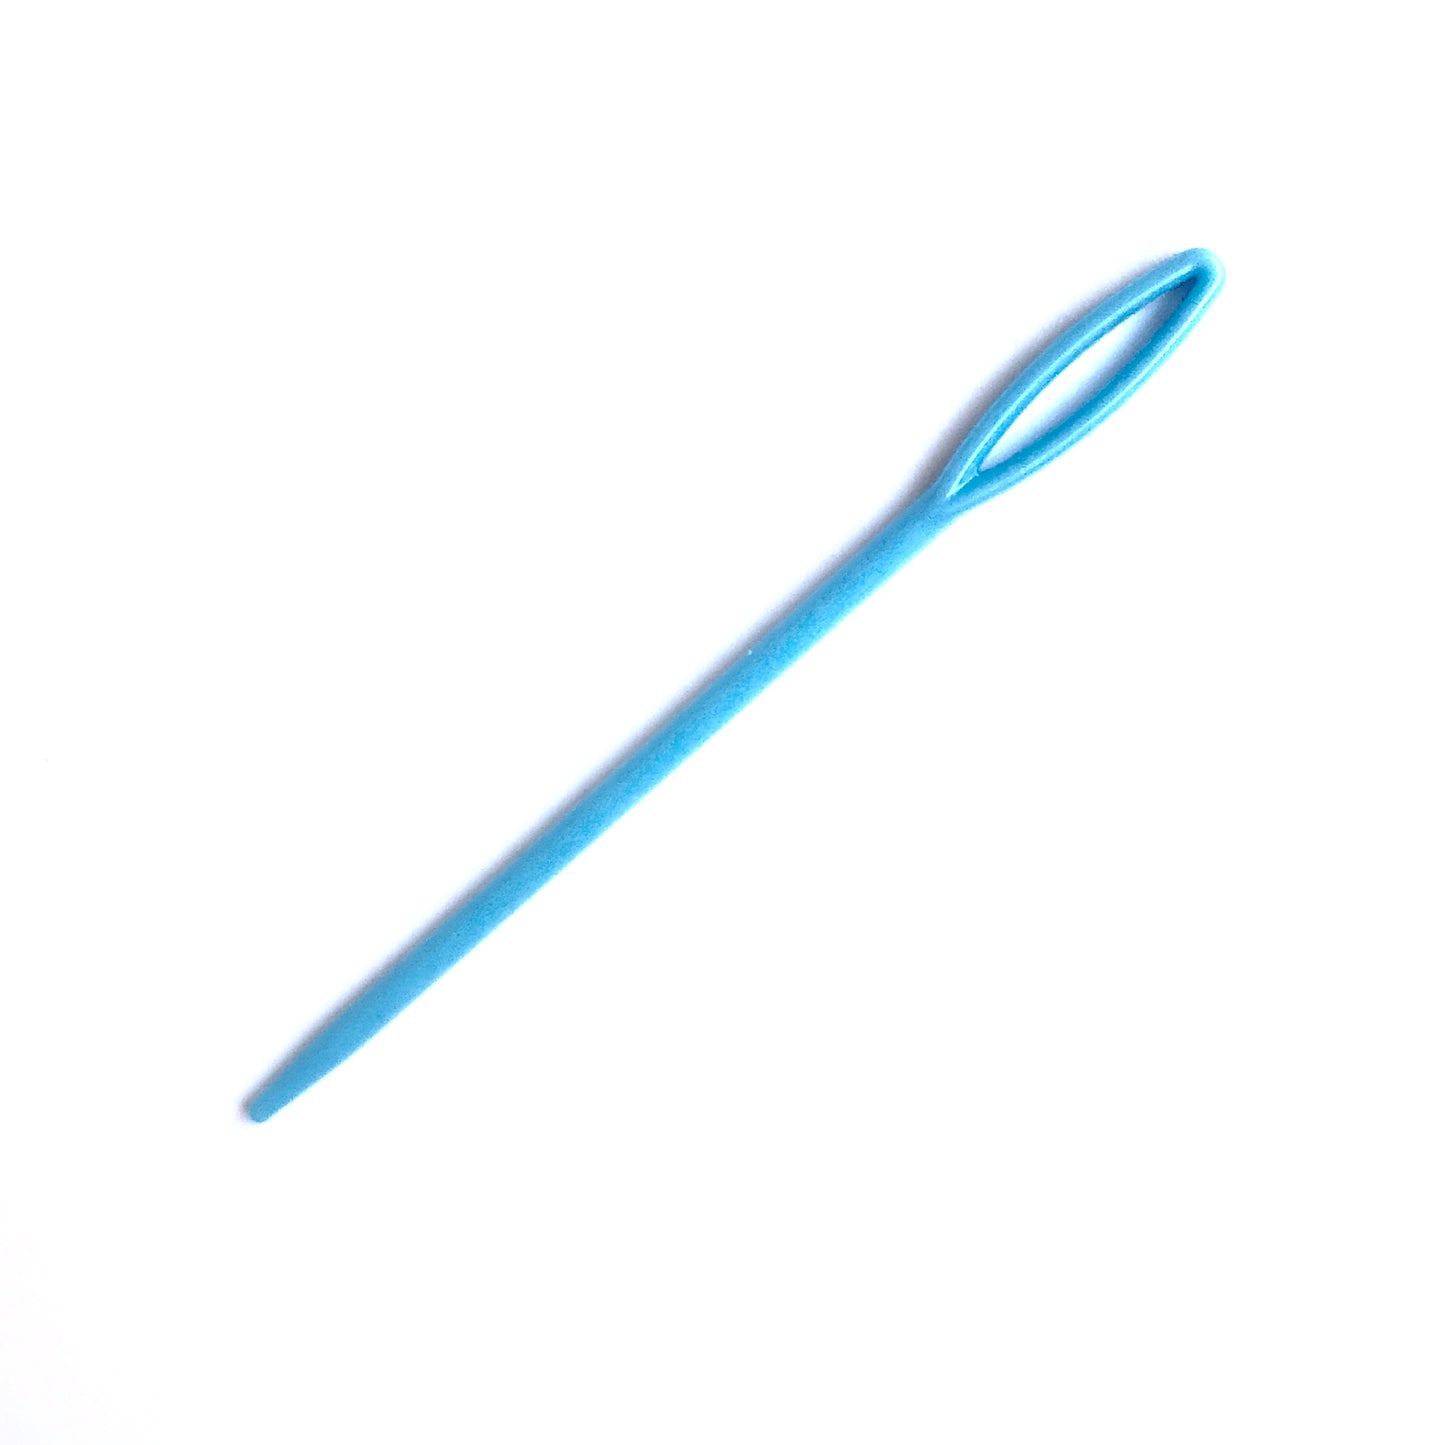 Plastic needles